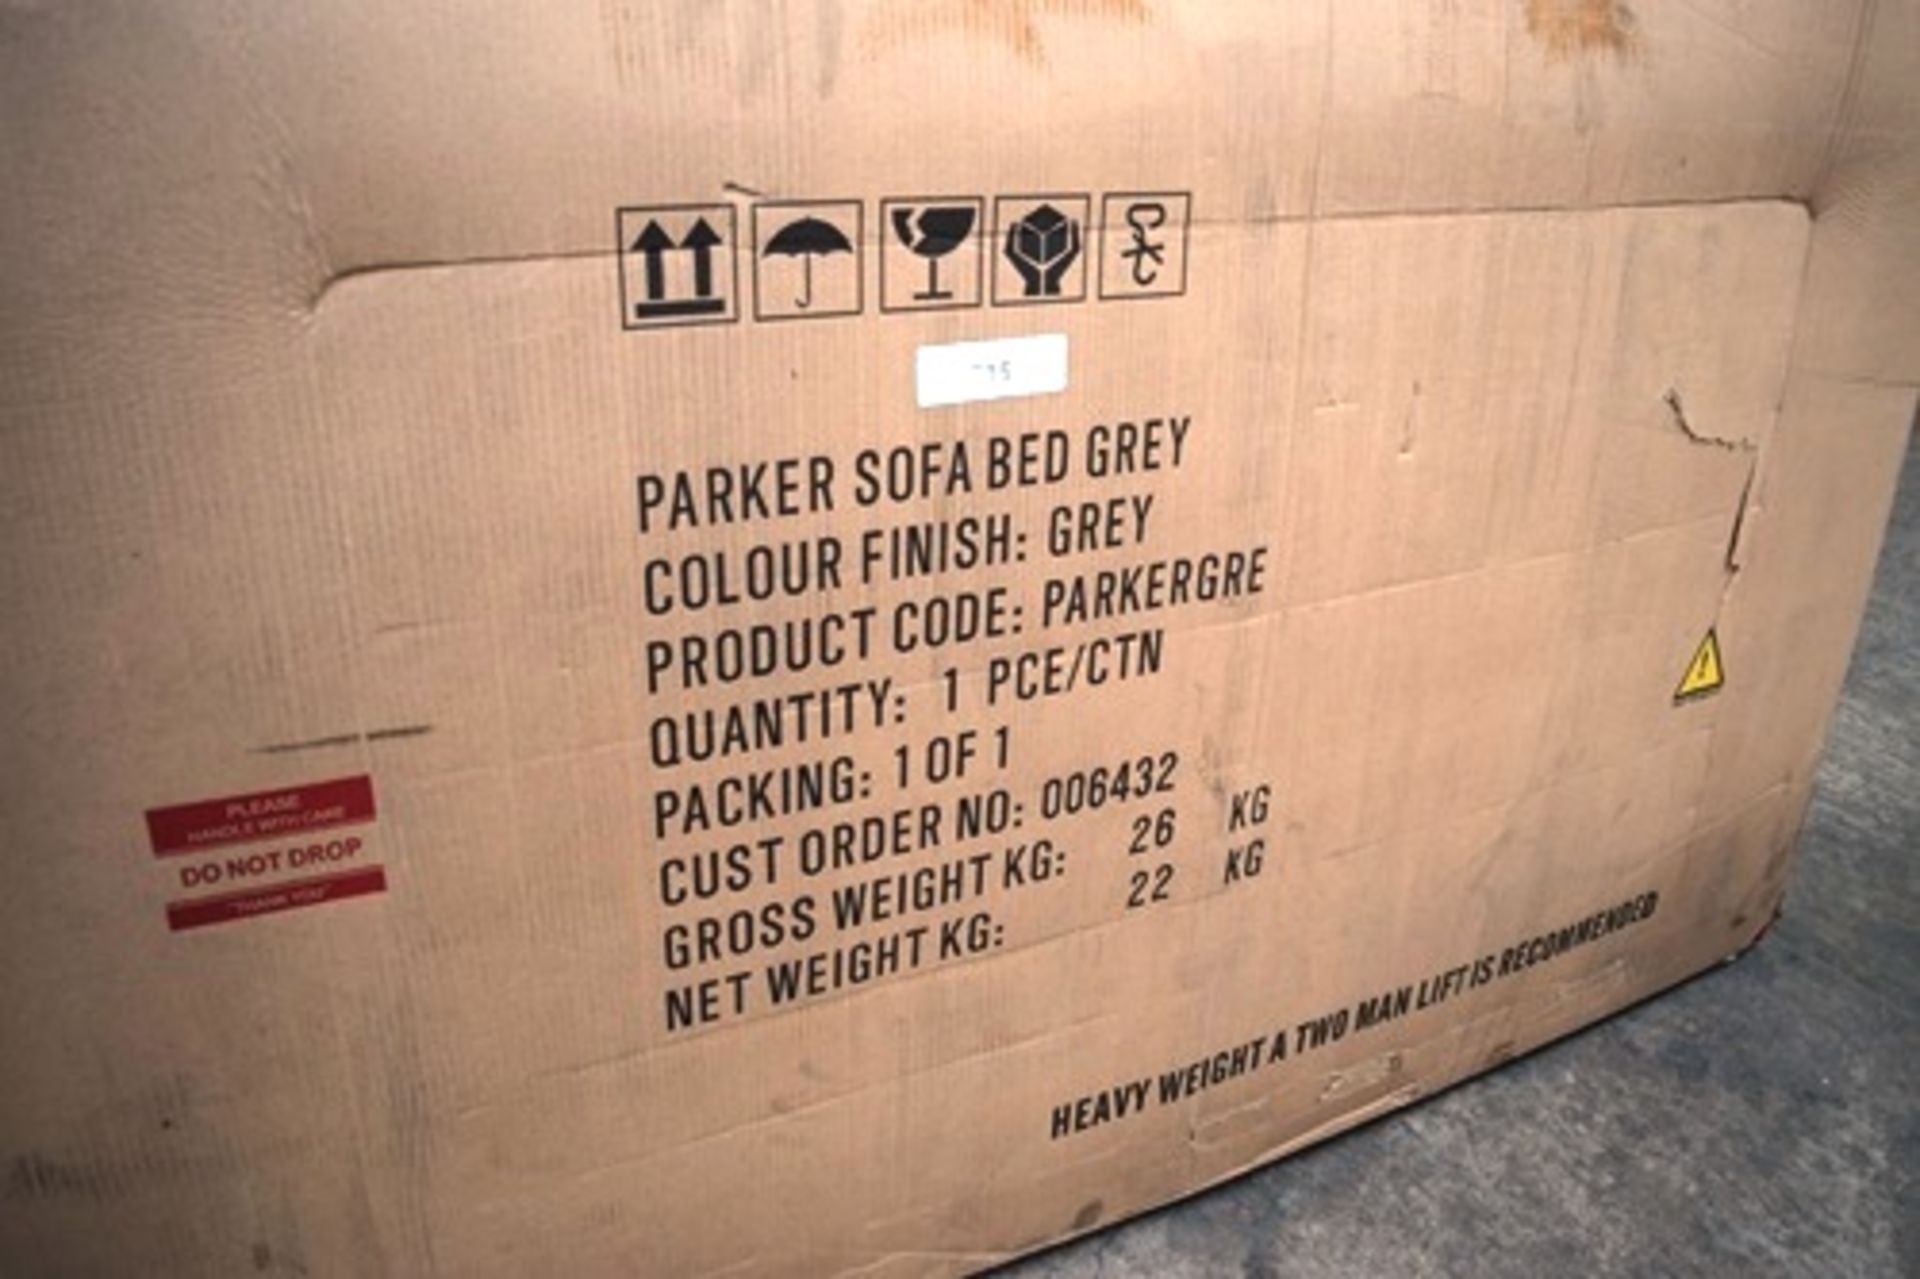 1 x Parker grey sofa bed, model Parker GRE - new (GSF46)